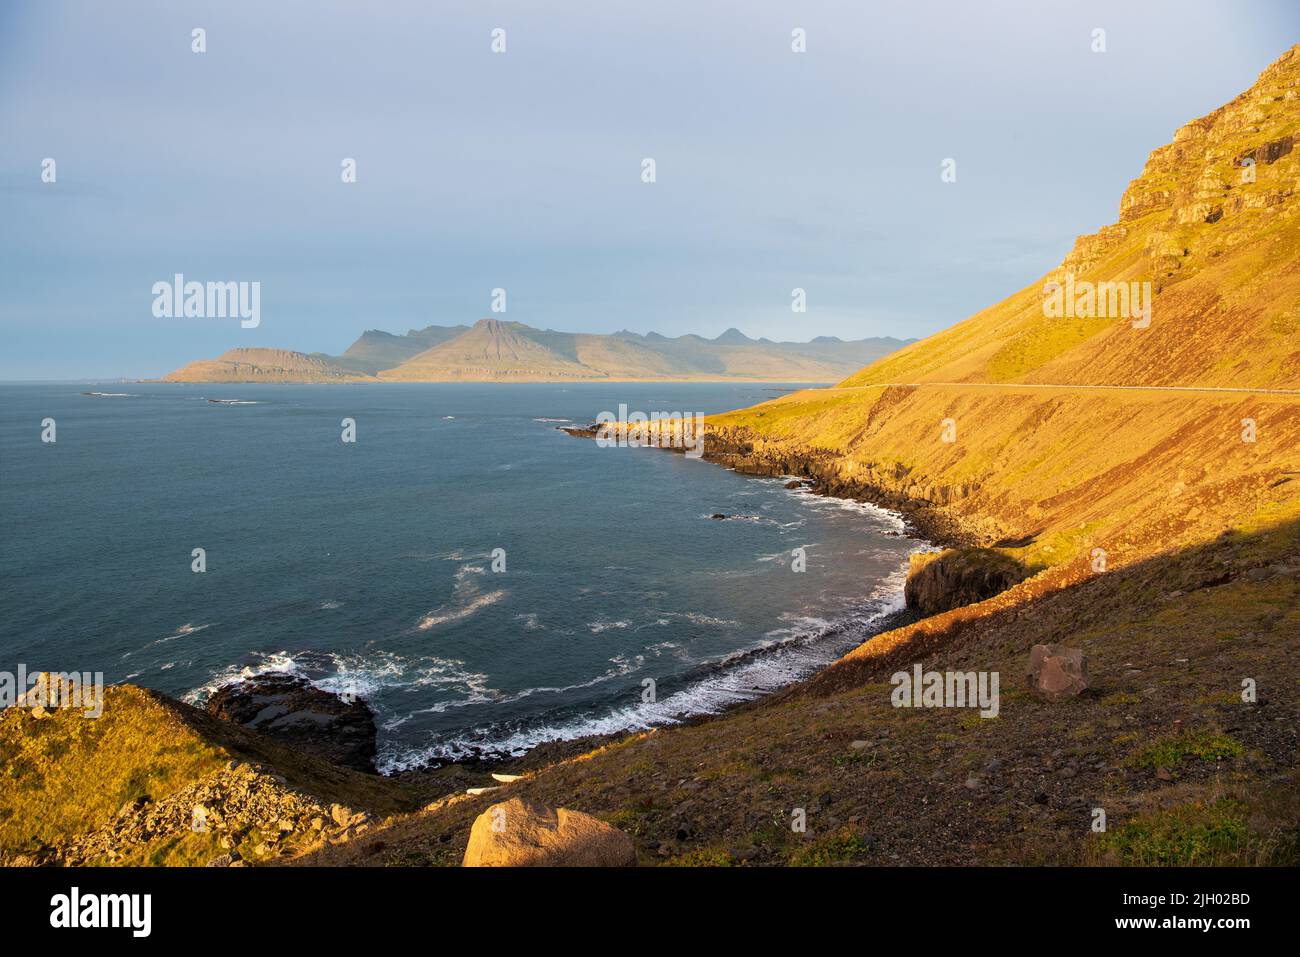 En début de matinée, regardez le périphérique islandais et la côte près de la vue panoramique de Breiðdalsvík Banque D'Images